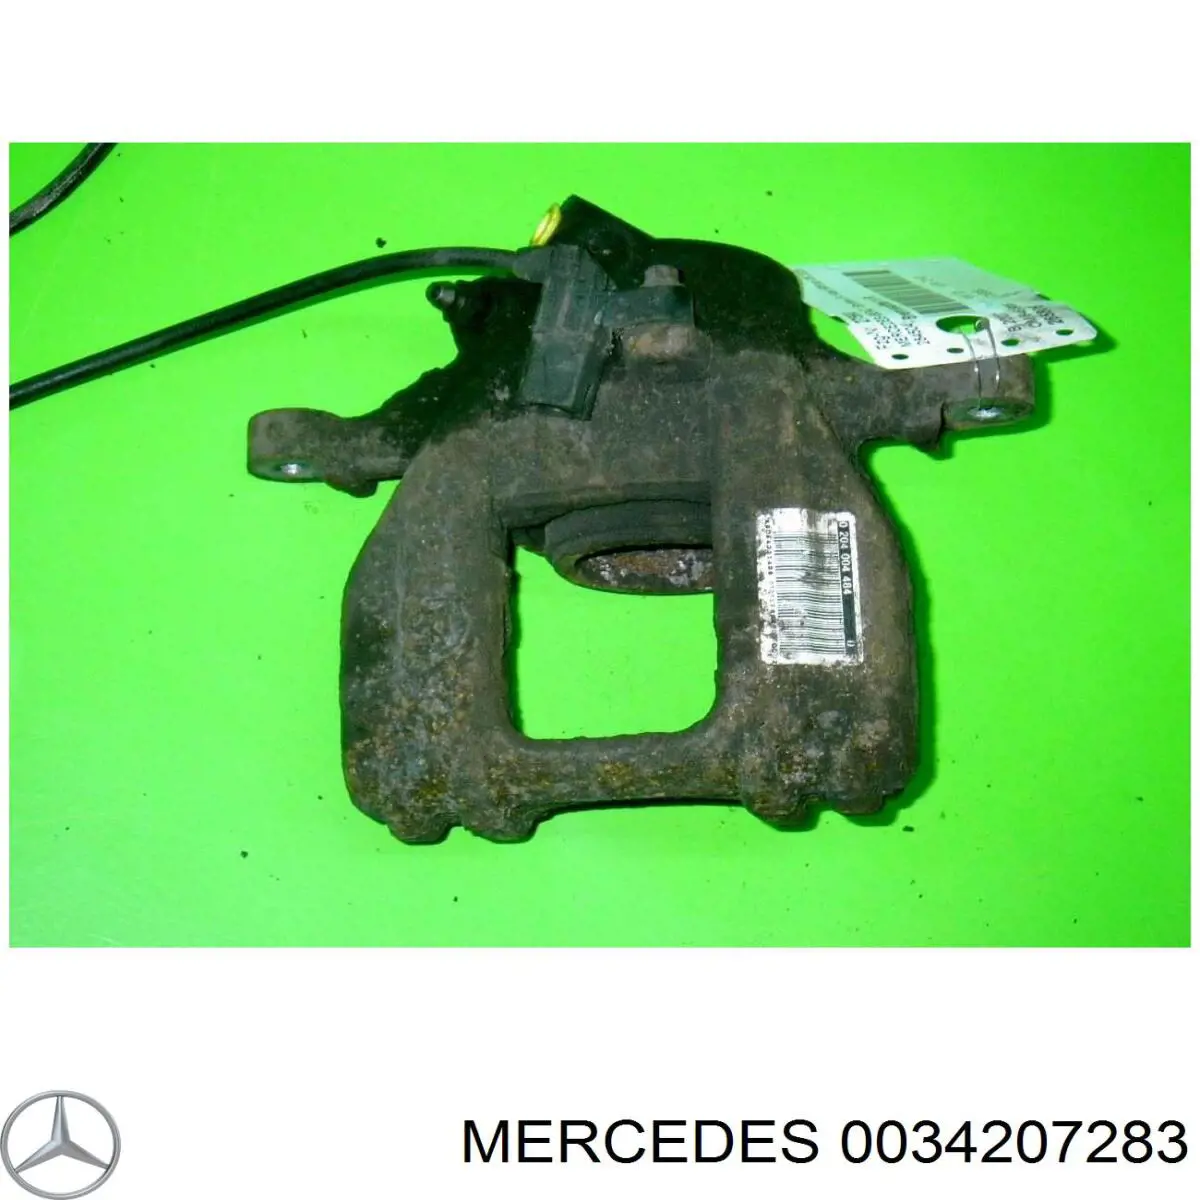 0034207283 Mercedes pinza de freno trasero derecho